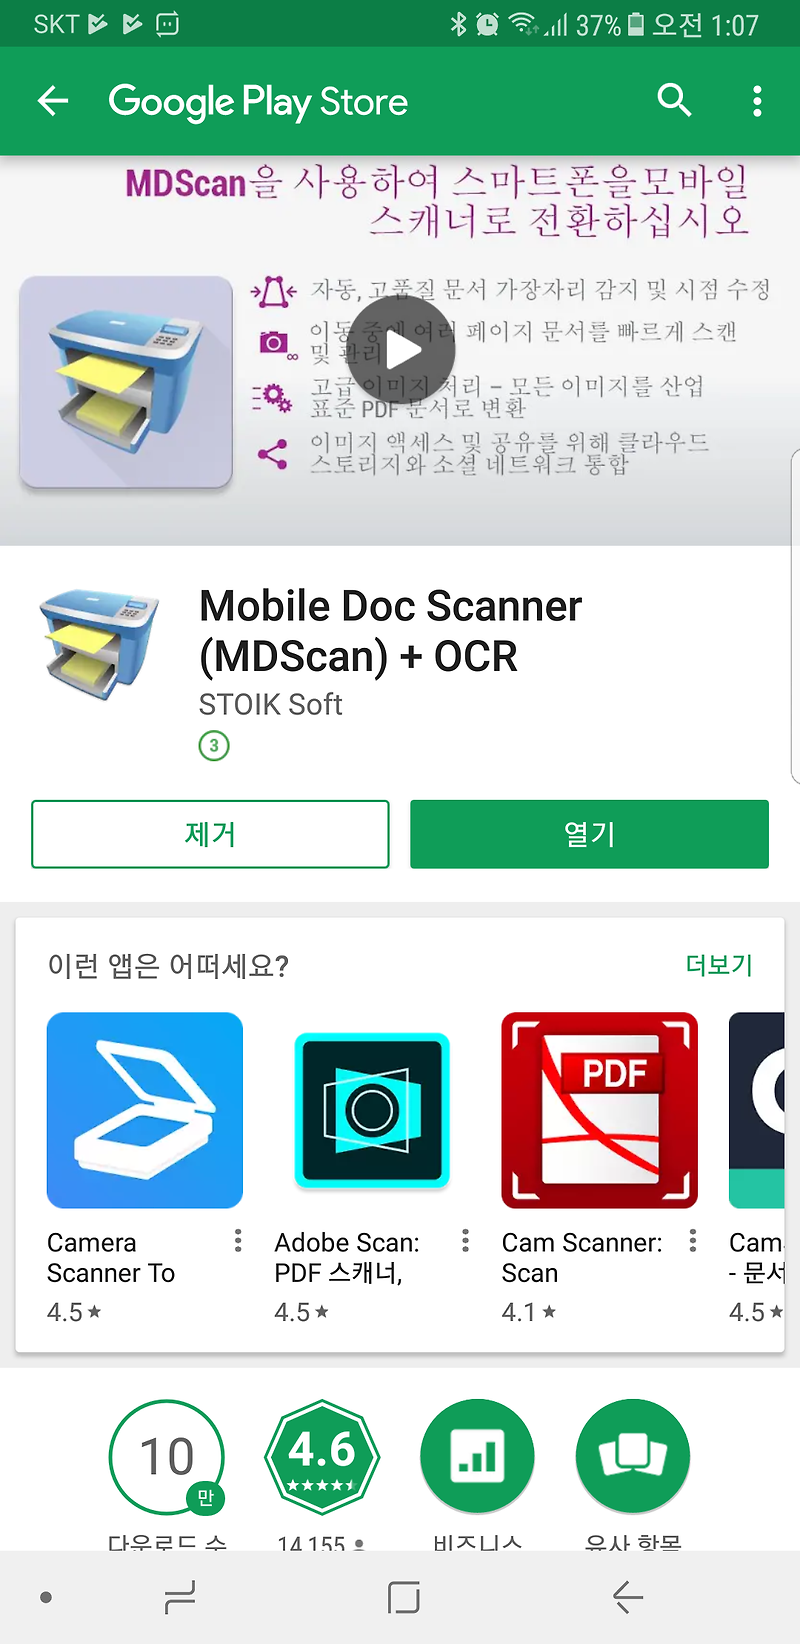 (플레이스토어) Mobile Doc Scanner (MDScan) + OCR' 한시적 무료